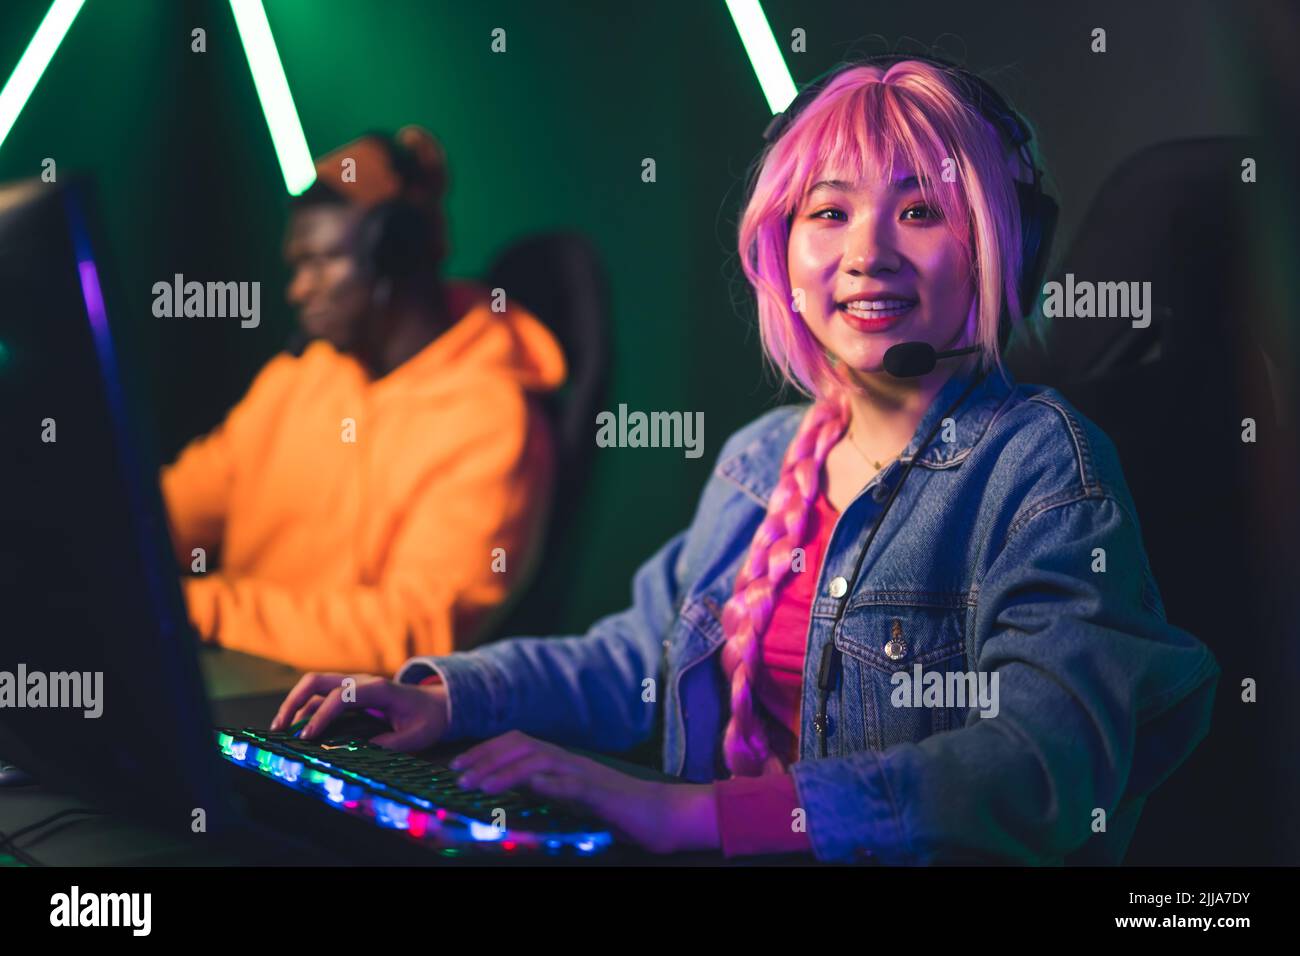 Müde fokussierte asiatische hübsche Mädchen mit einem langen rosa Zopf sitzen in einem Gaming-Stuhl während einer Online-Gaming-Meisterschaft, versuchen zu gewinnen. Hochwertige Fotos Stockfoto